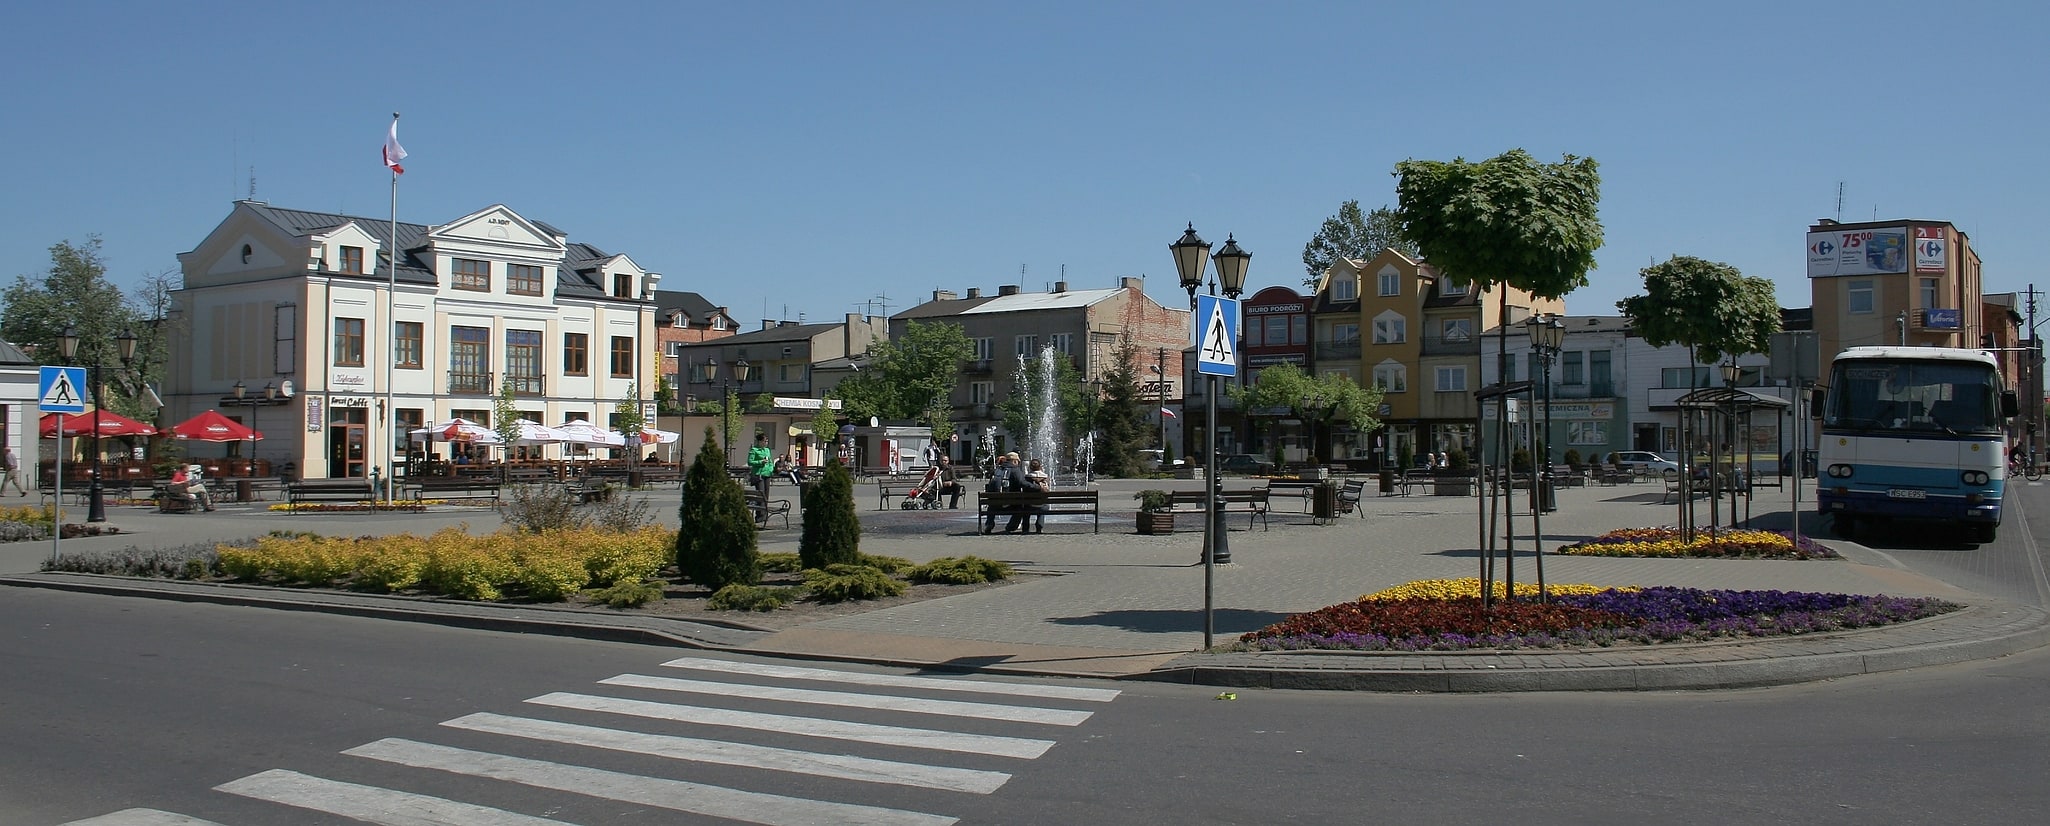 Sochaczew, Poland